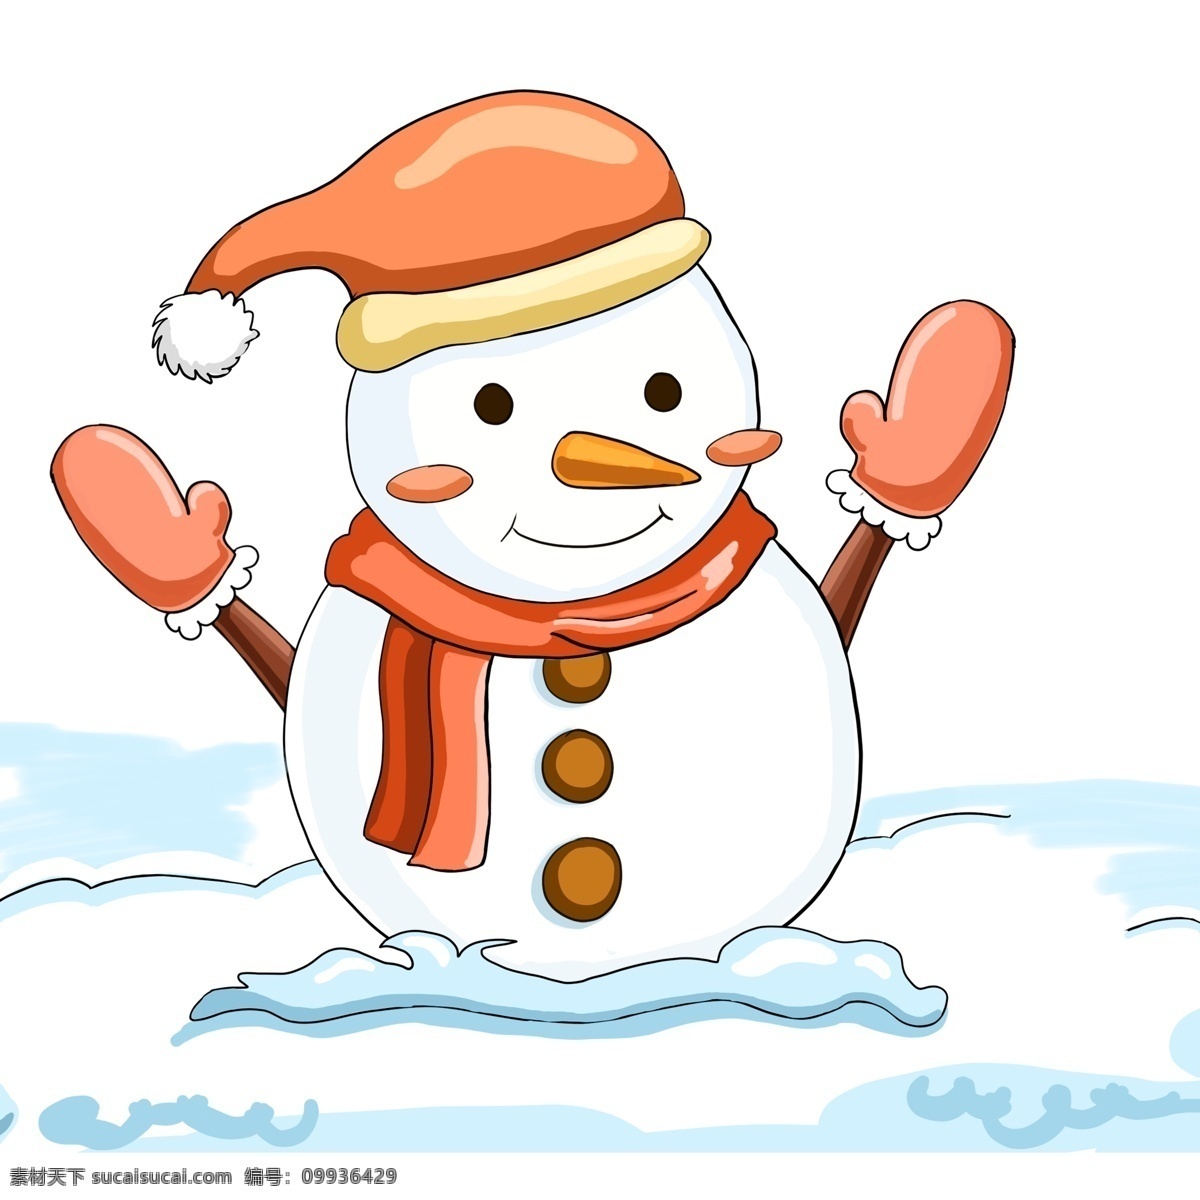 漫画 风格 圣诞节 雪人 商用 元素 彩色 插画 冬季 手绘 手套 圣诞帽 积雪